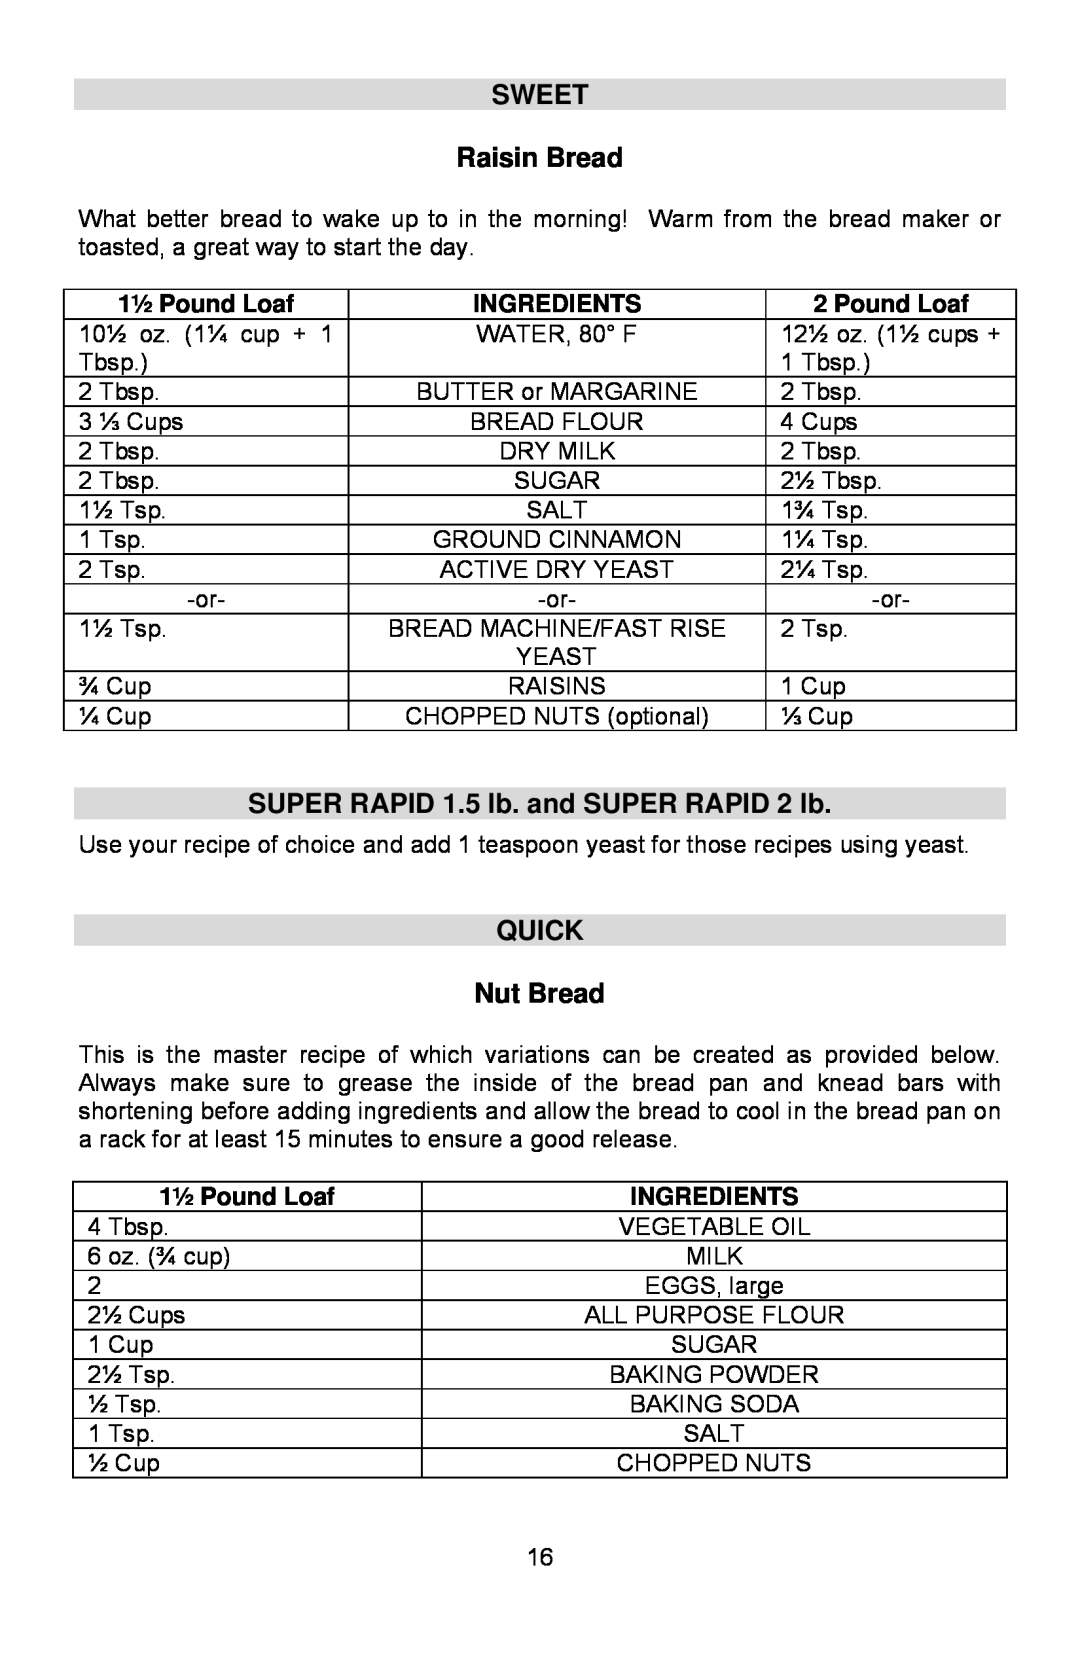 West Bend L5762 SWEET Raisin Bread, SUPER RAPID 1.5 lb. and SUPER RAPID 2 lb, QUICK Nut Bread, 1½ Pound Loaf, Ingredients 